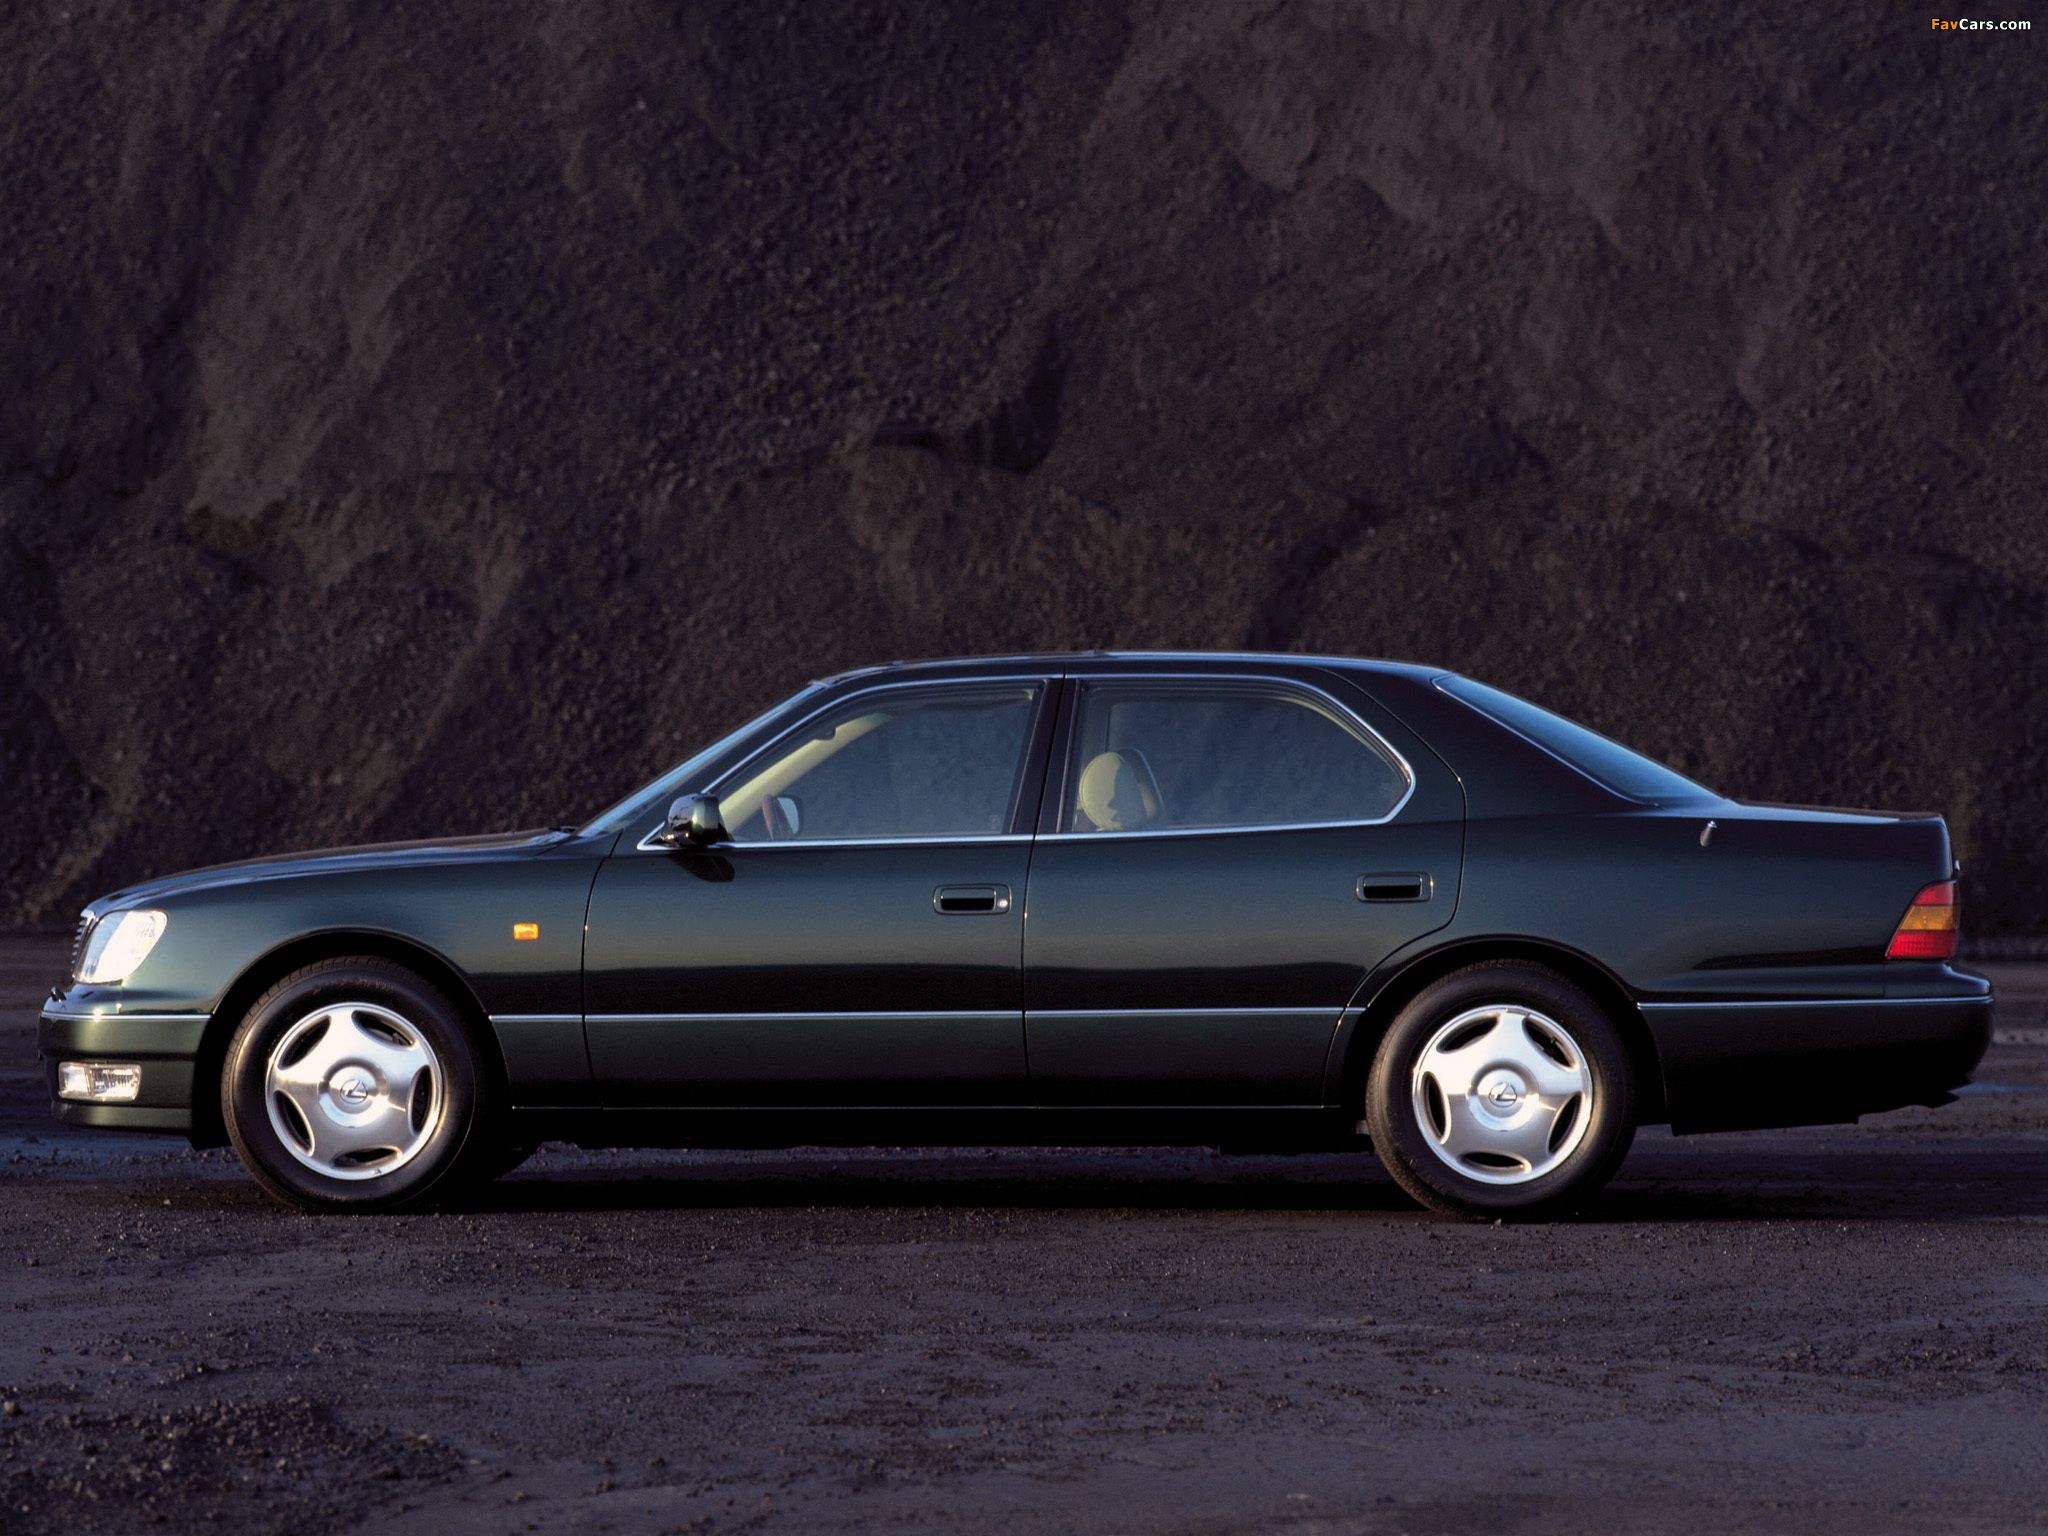 1997 Lexus LS400 | Lexus, Lexus ls, Dream cars